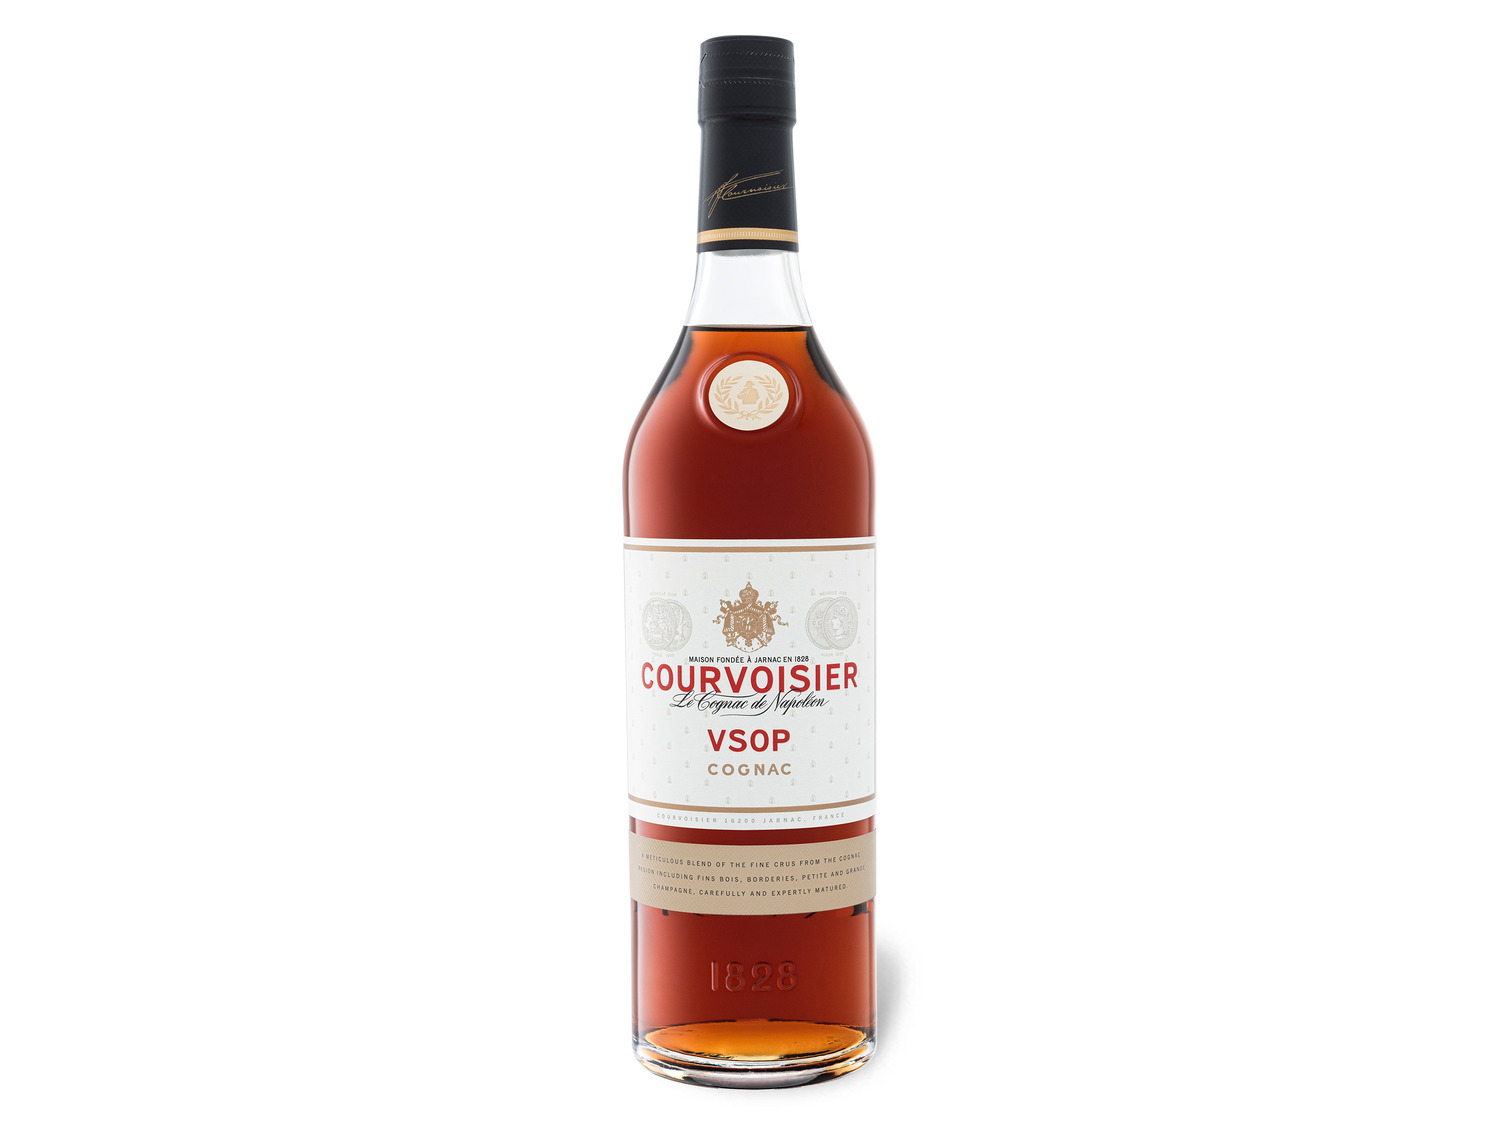 40% Vol mit VSOP Cognac LIDL Geschenkbox | Courvoisier